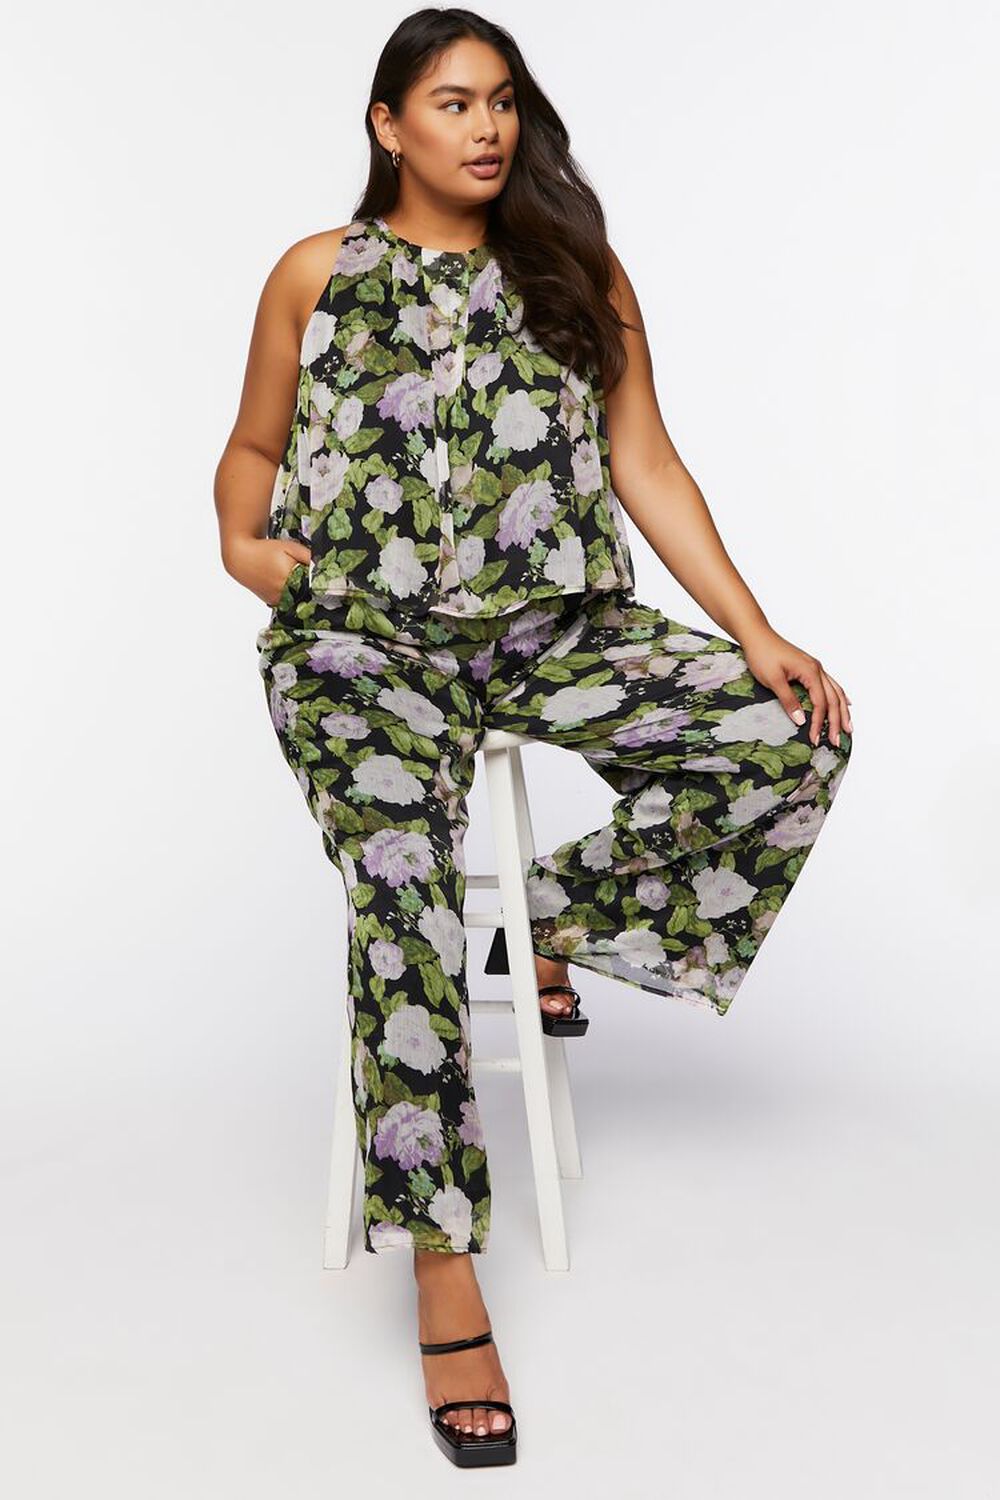 BLACK/MULTI Plus Size Floral Print Top & Pants Set, image 1